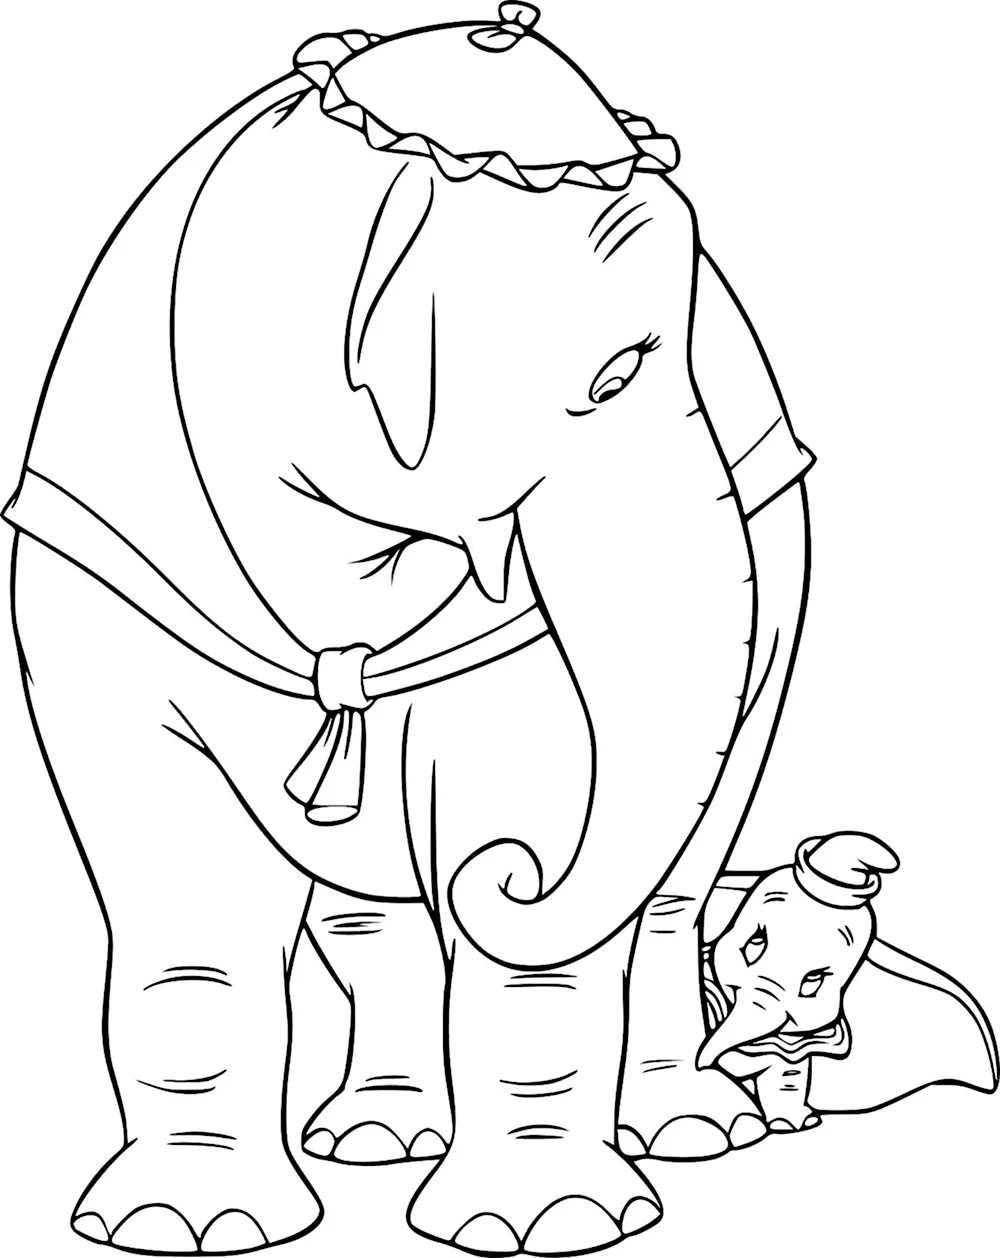 Раскраска слон и моська басня Крылова